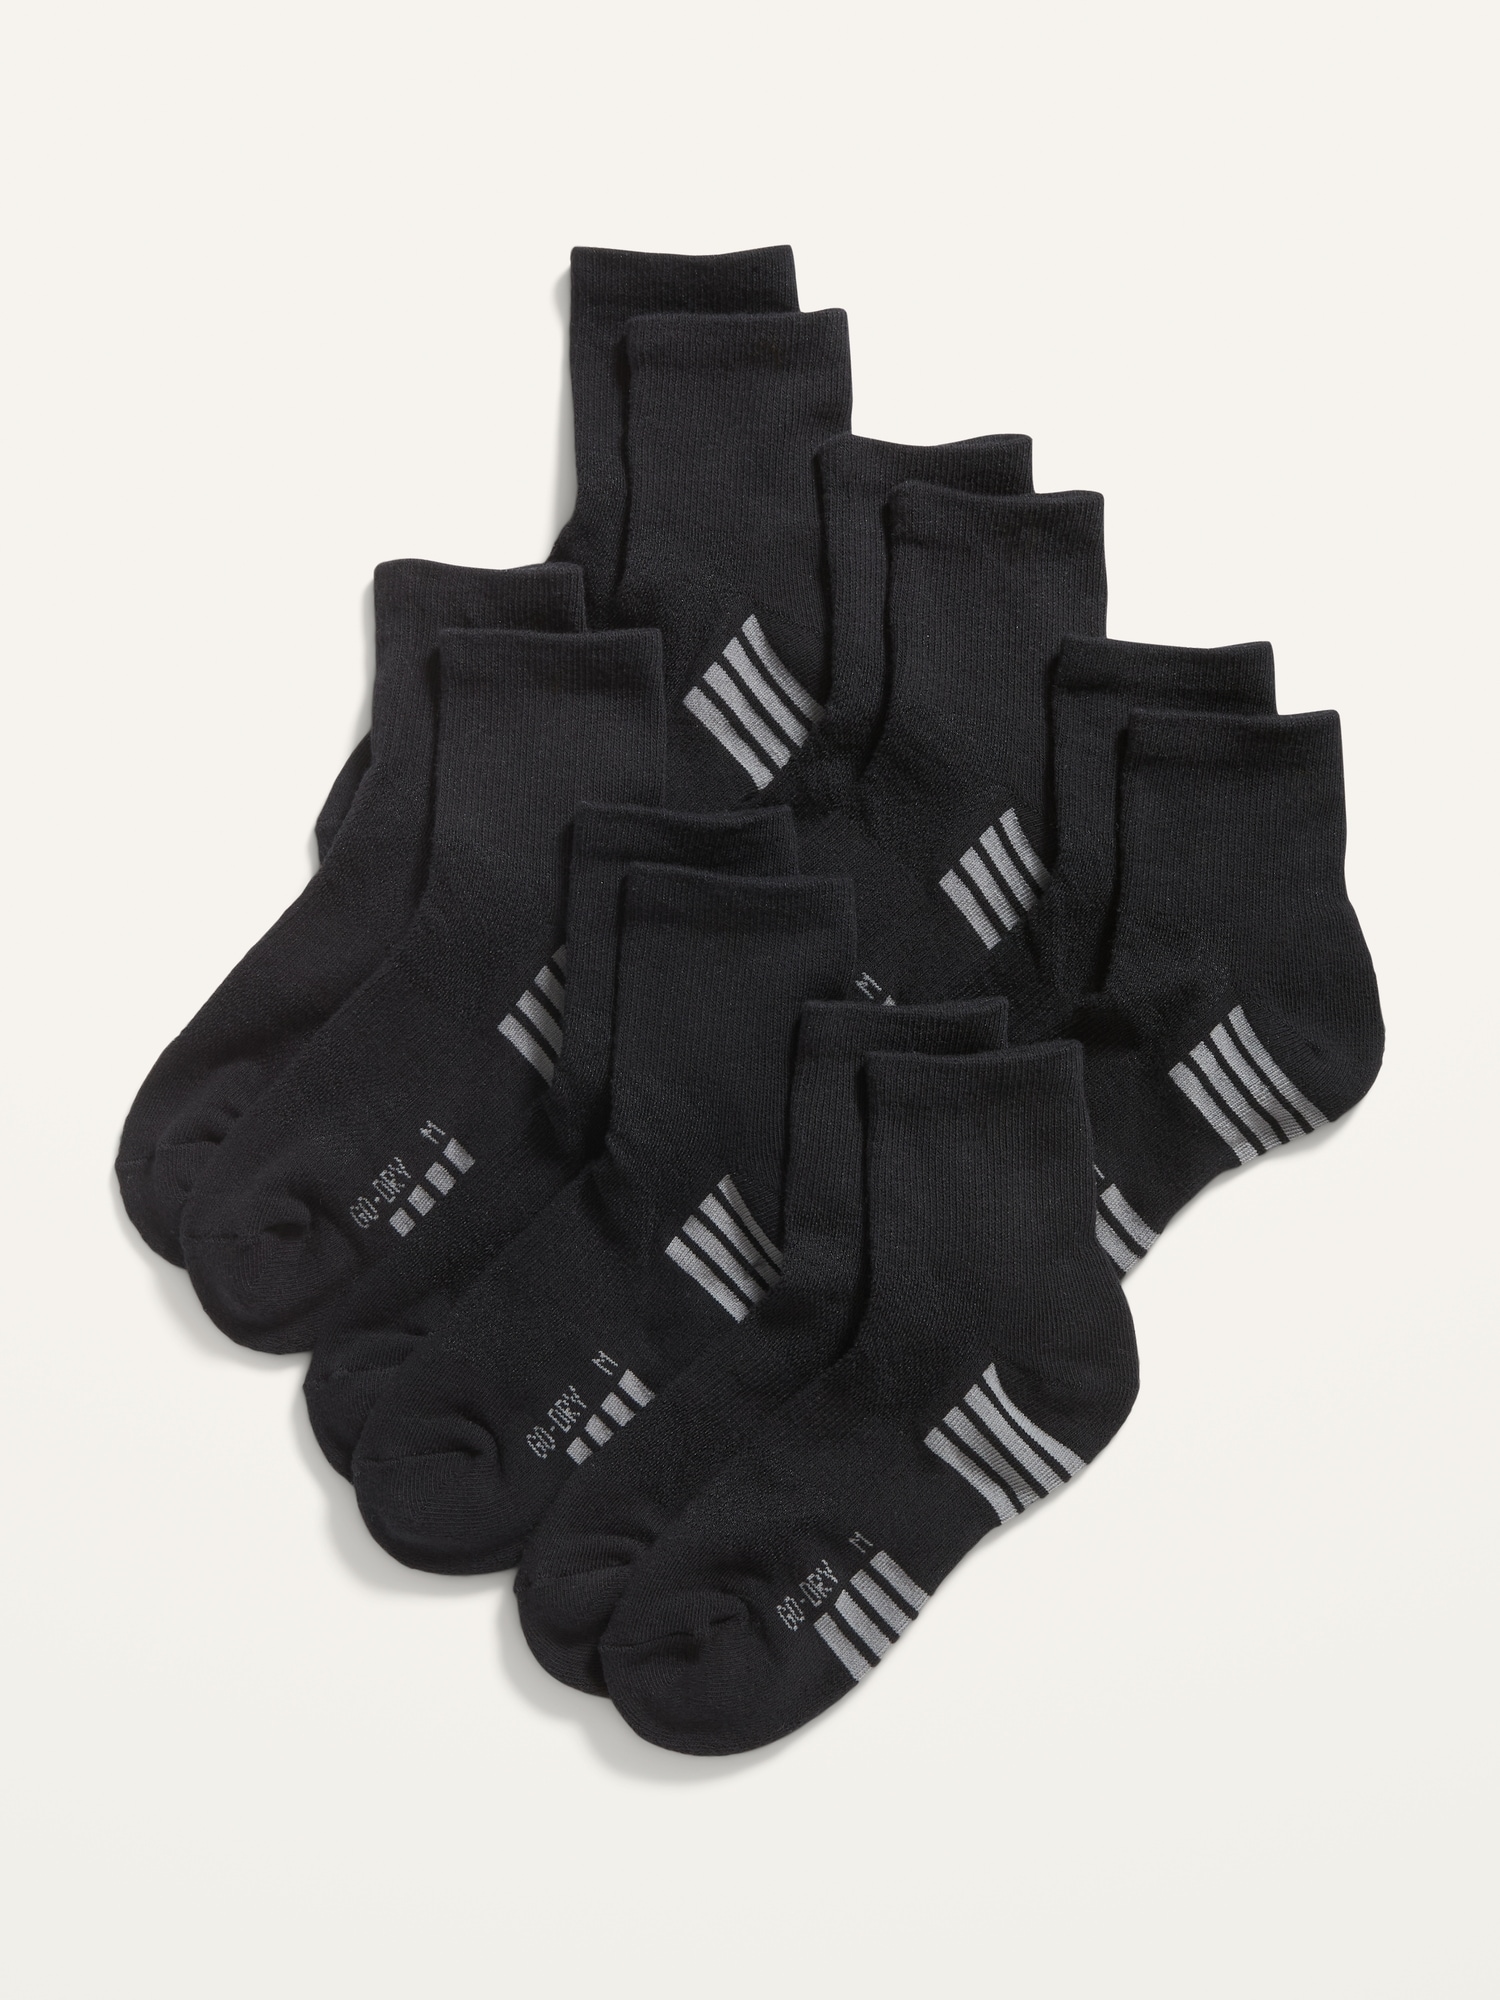 Go-Dry Quarter Crew Socks 6-Pack for Boys | Old Navy